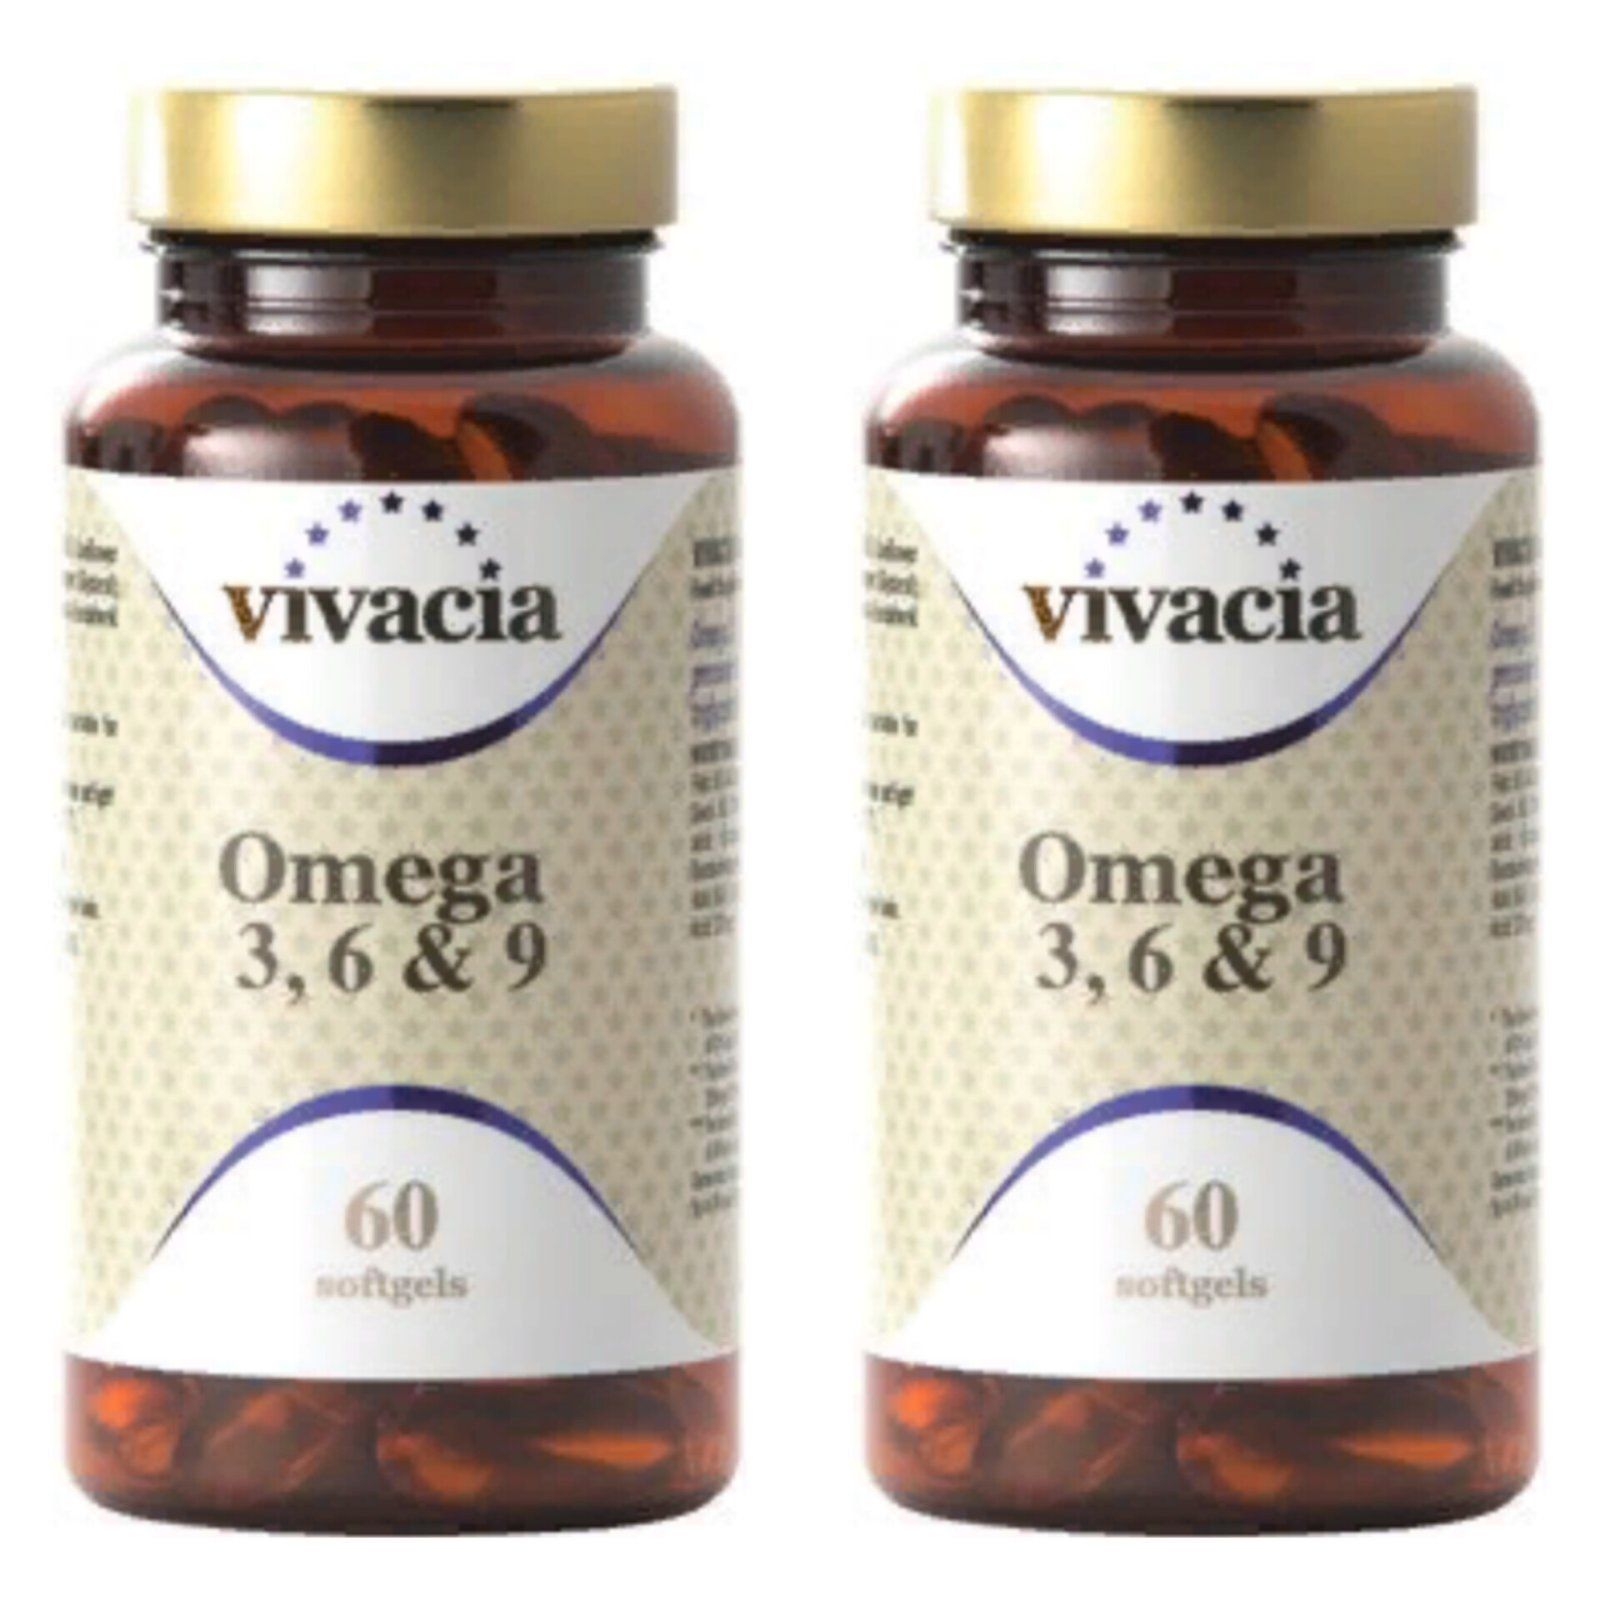 Vivacia vitamin. Коэнзим q10 vivacia. Витамины vivacia Omega. Vivacia для волос. Коэнзим QH Япония.